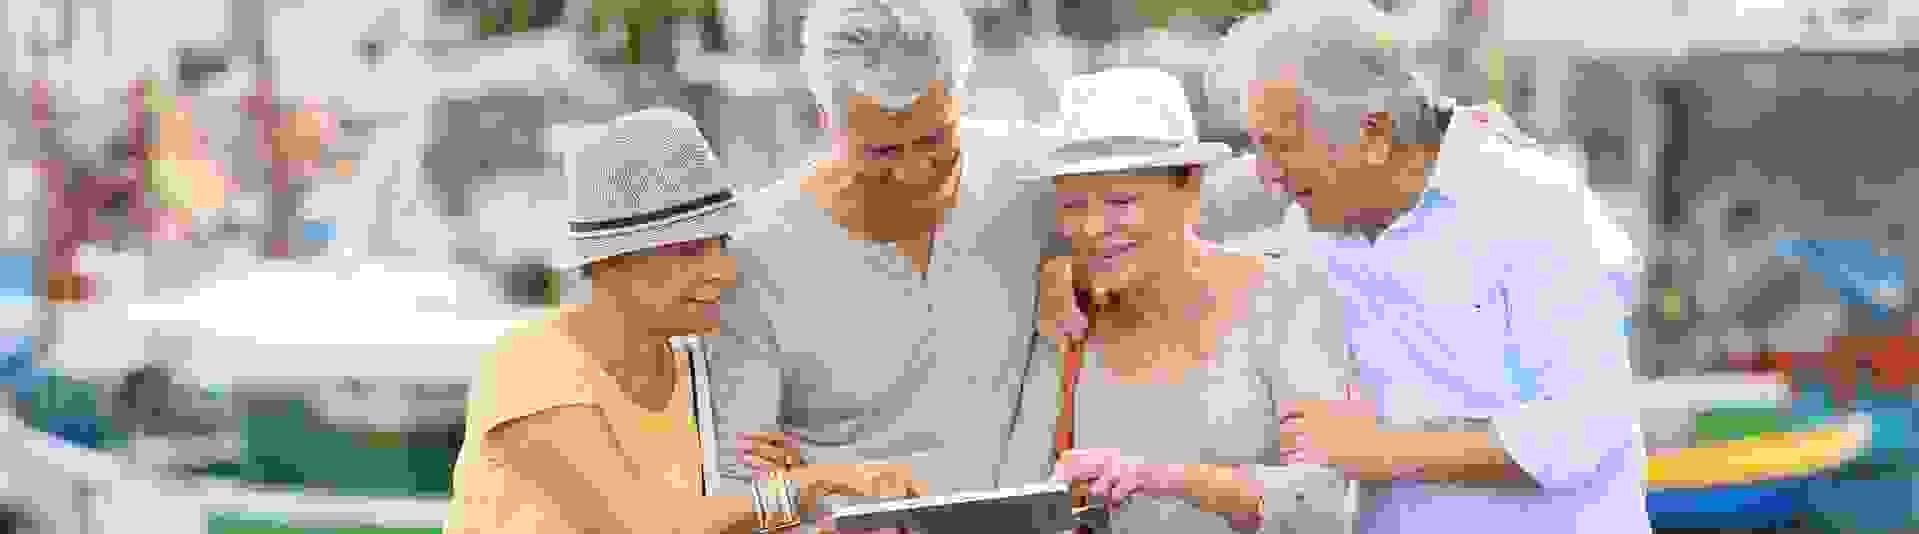 Zwei Männer und zwei Frauen, Arm in Arm, gucken sich etwas auf einem Tablet an